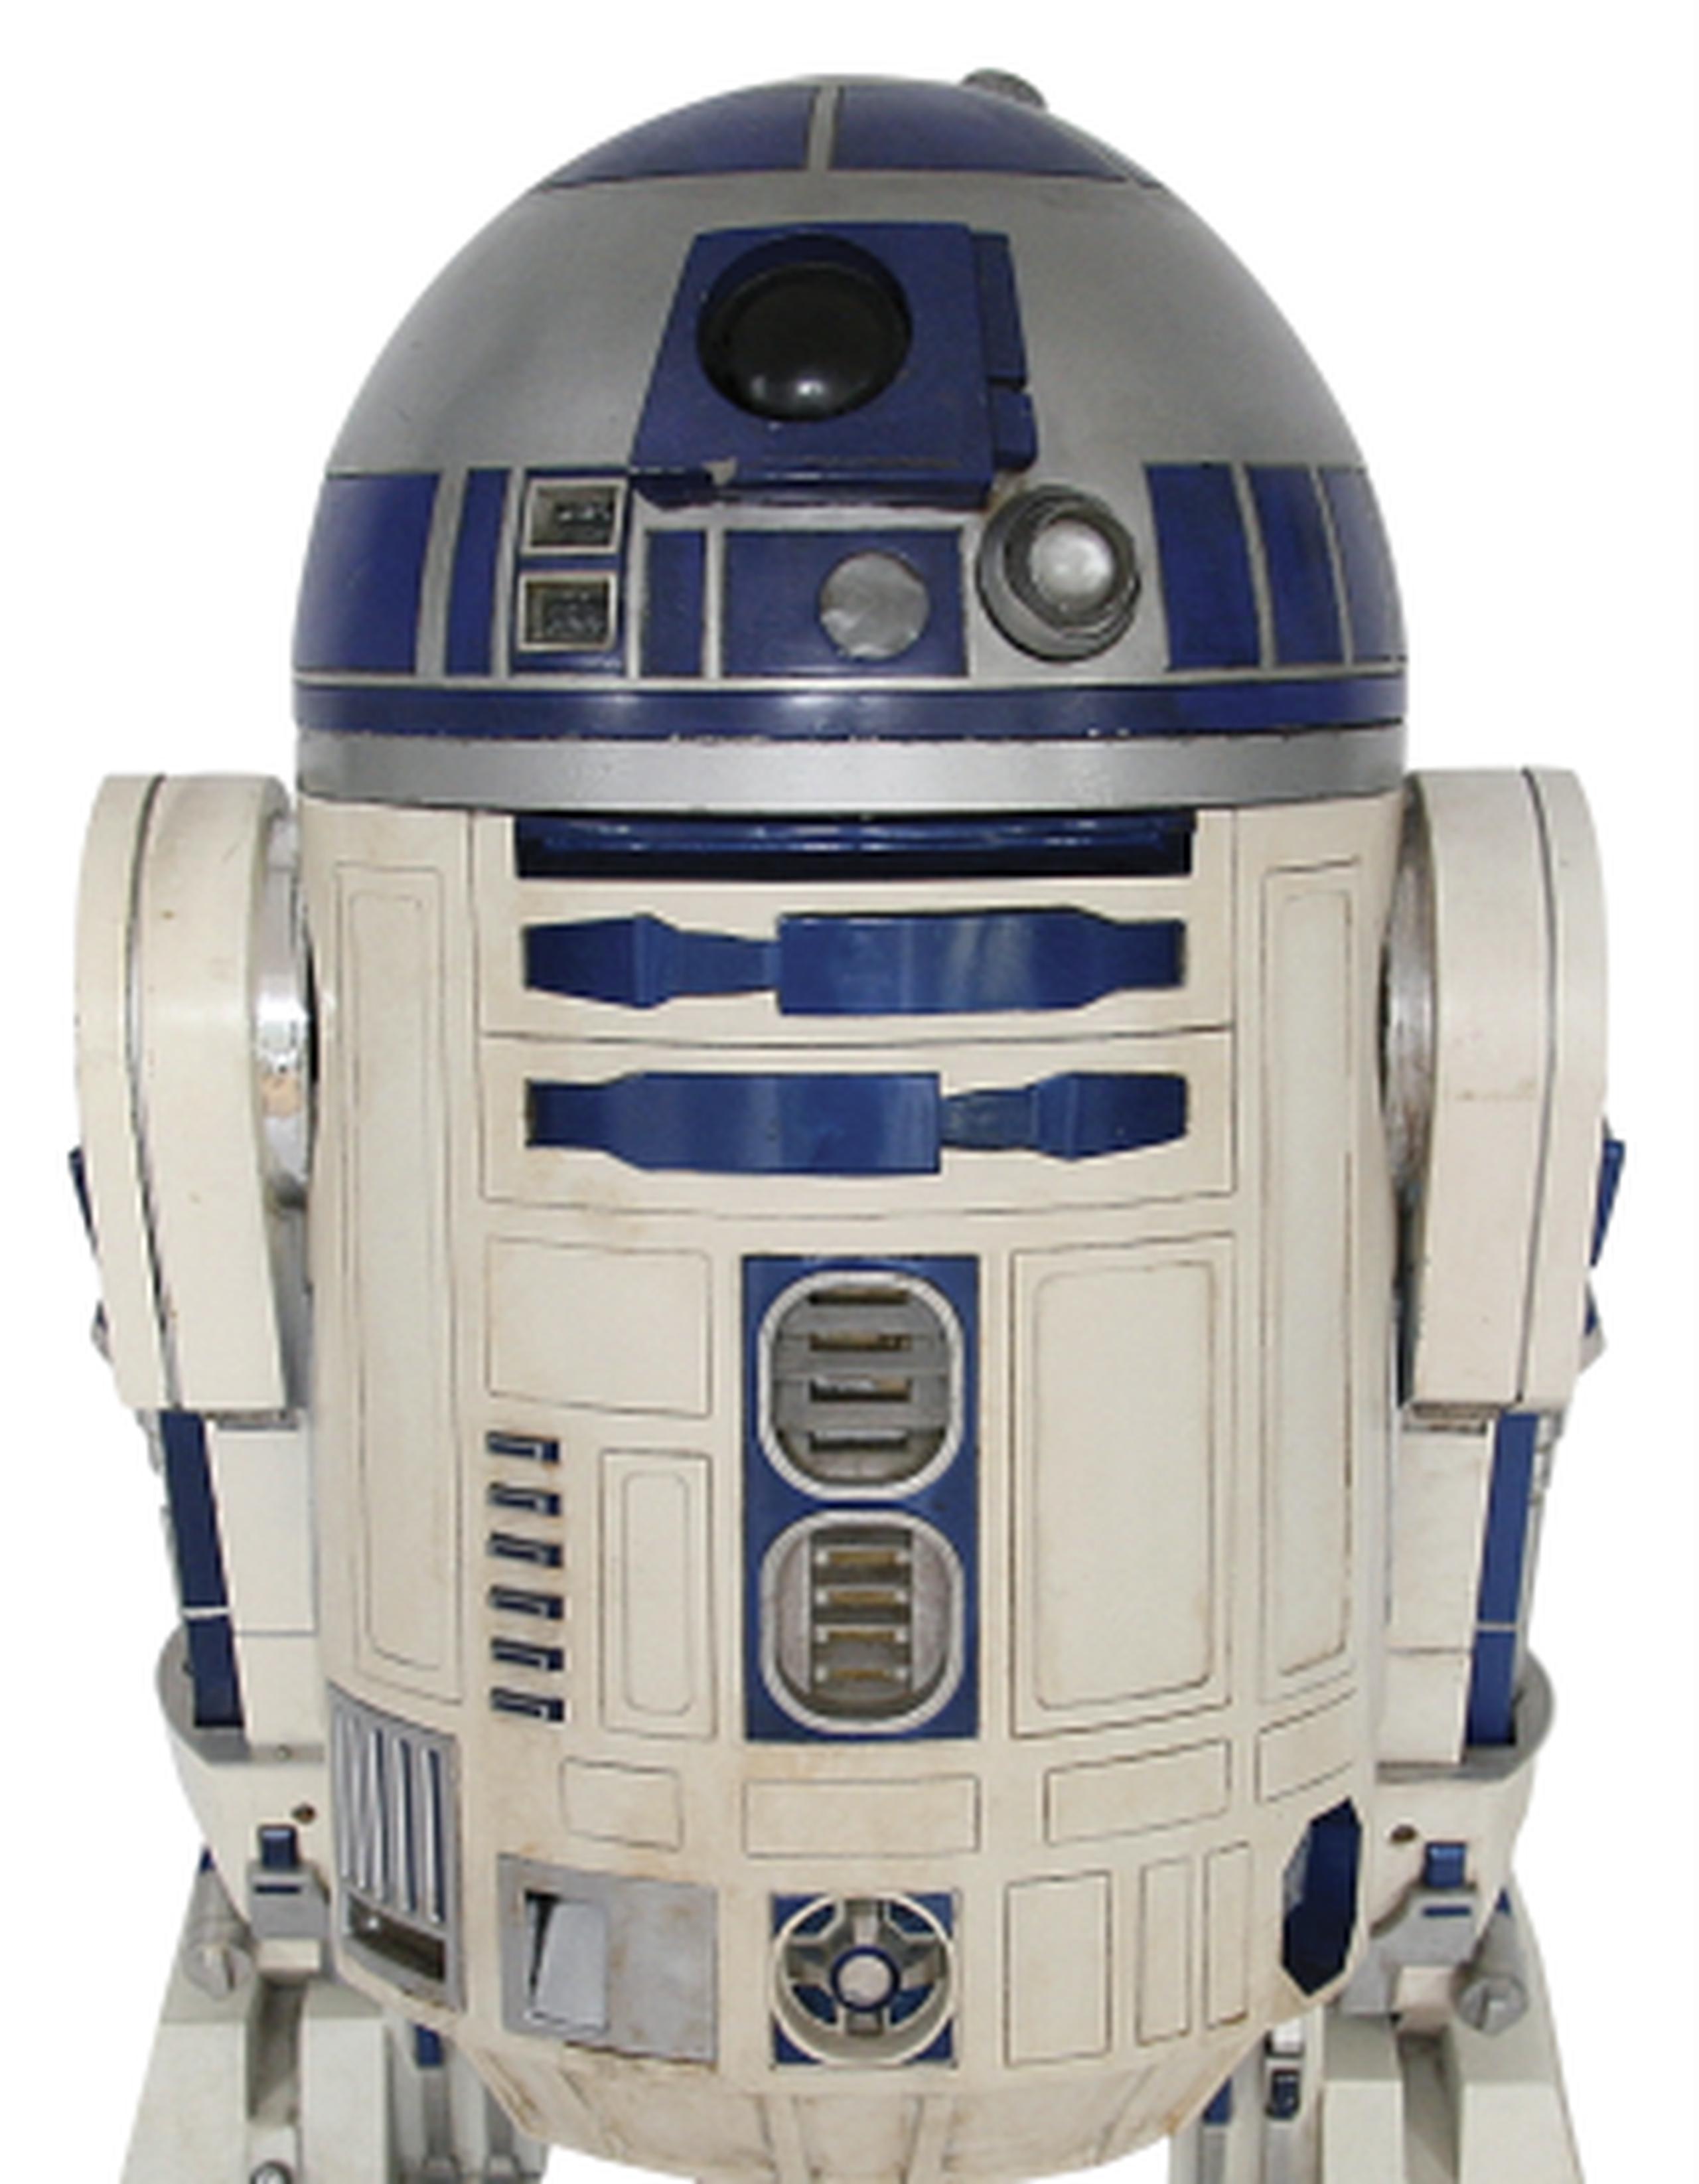 R2-D2 usado los primeros filmes de "Star Wars". (Profiles in History vía AP)